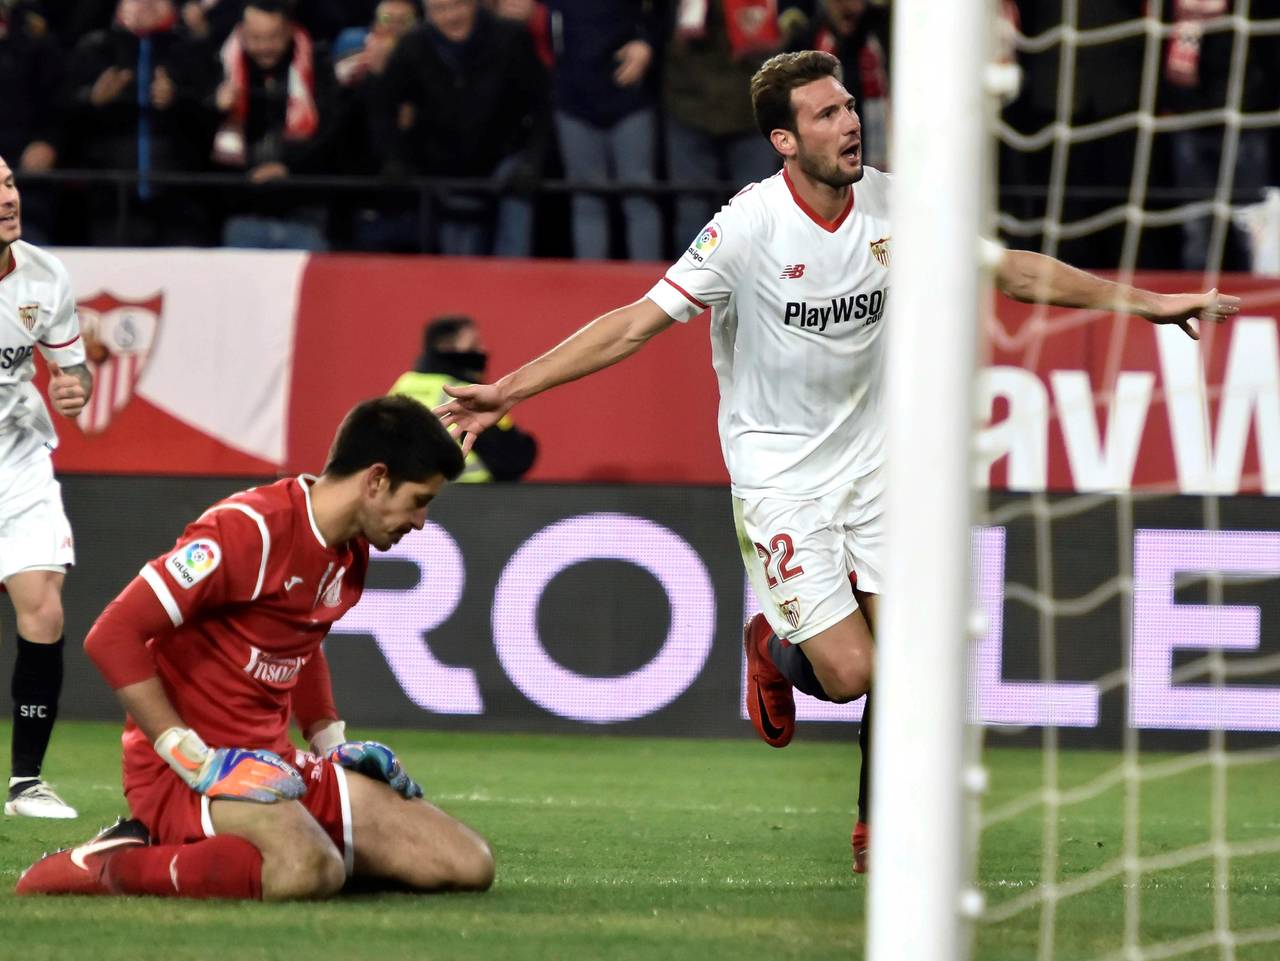 Con goles de los argentinos Joaquín Correa y Franco Vázquez, Sevilla dio cuenta ayer 2-0 de Leganés y puso fin a la sorprendente marcha del modesto club madrileño en la Copa del Rey. Sevilla se mete a final de Copa